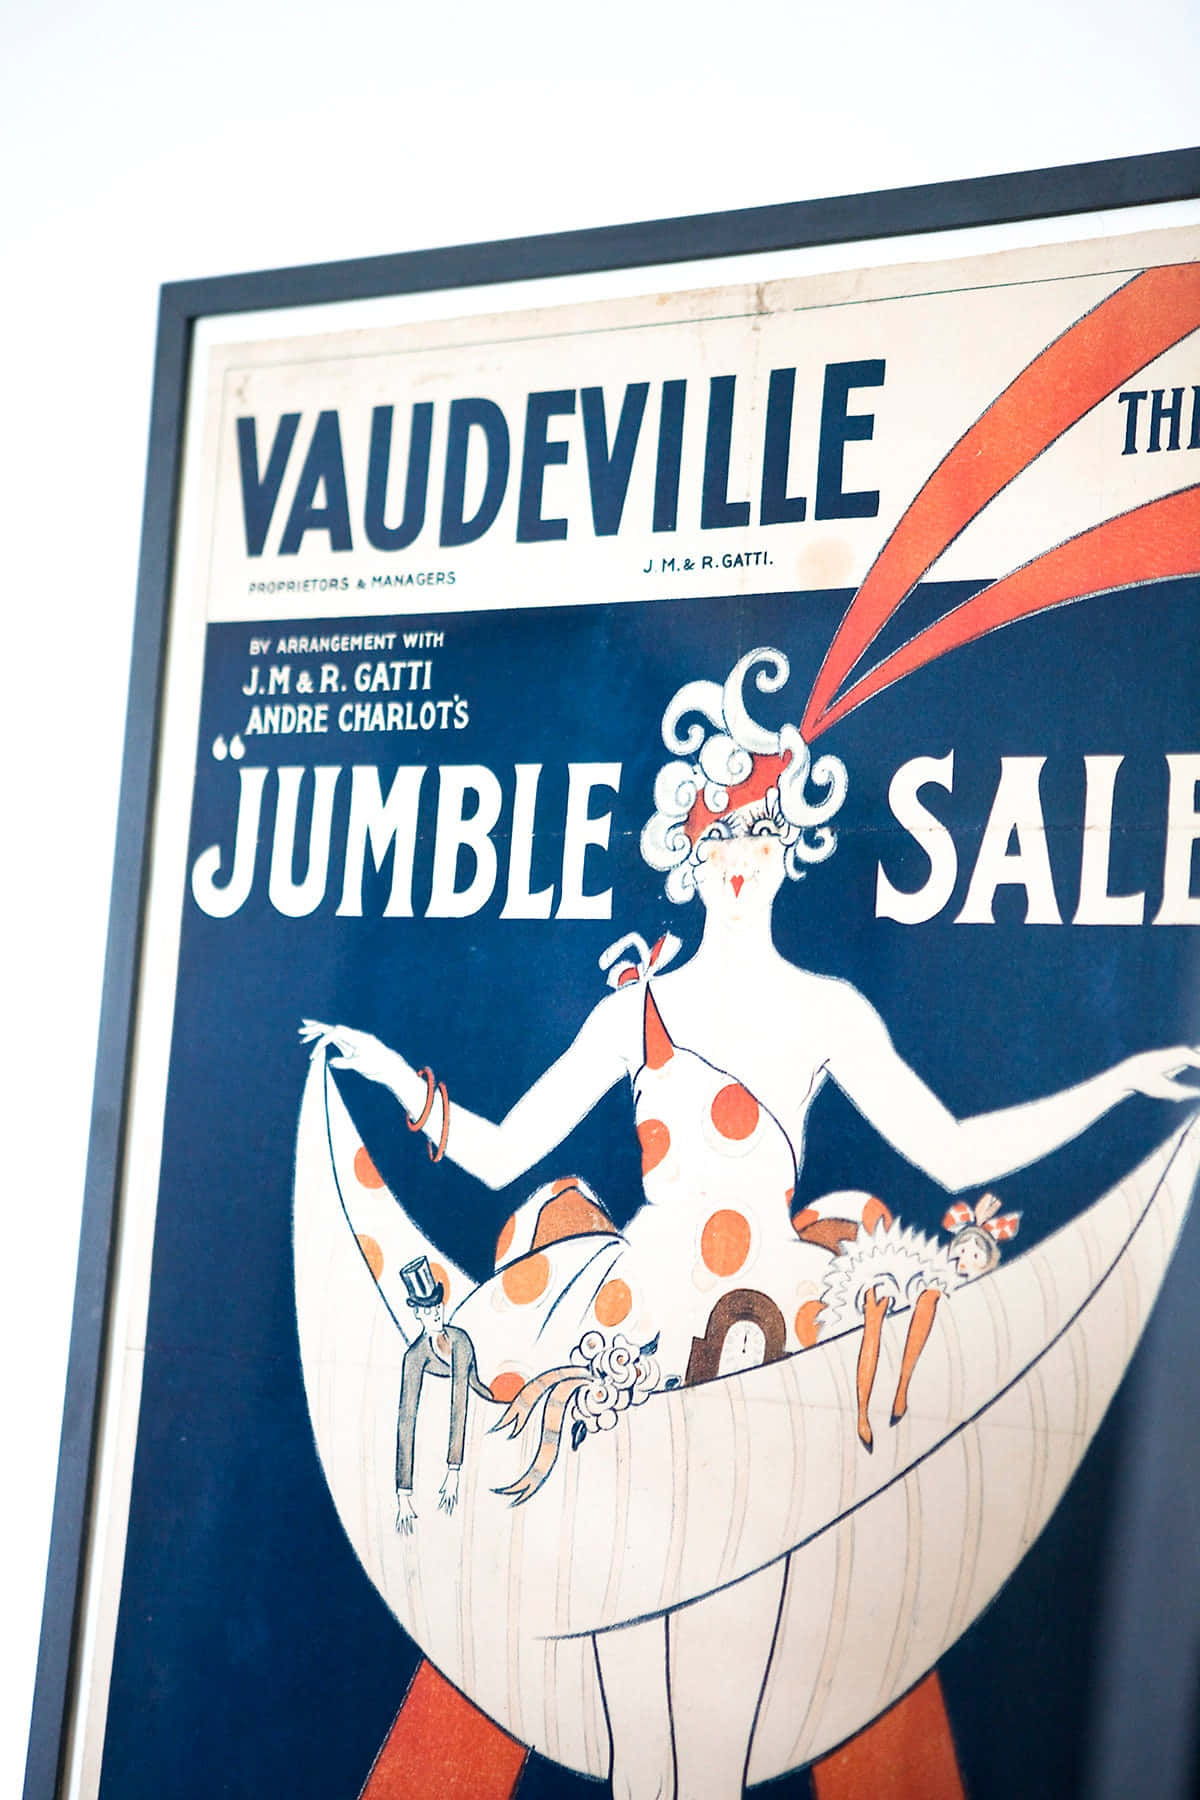 Vintage Vaudeville Jumble Sale Poster Wallpaper